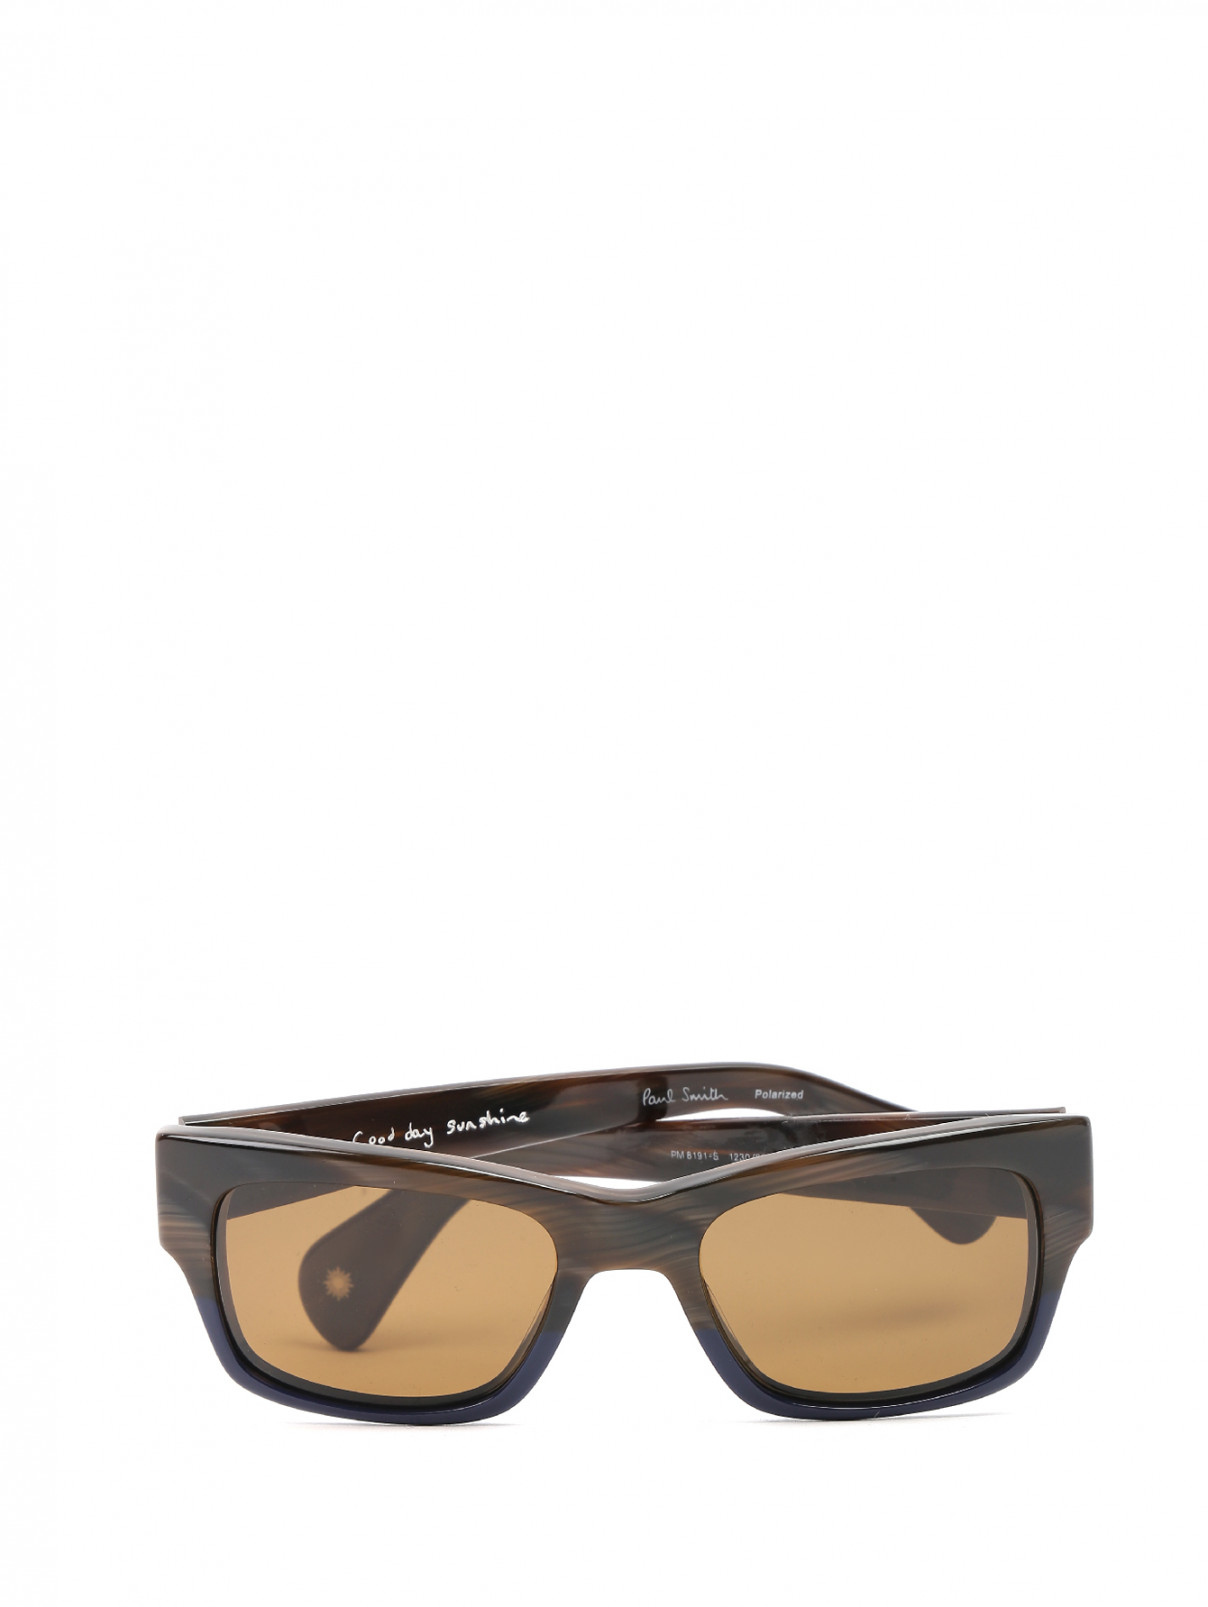 Солнцезащитные очки в пластиковой оправе с узором Paul Smith  –  Общий вид  – Цвет:  Узор